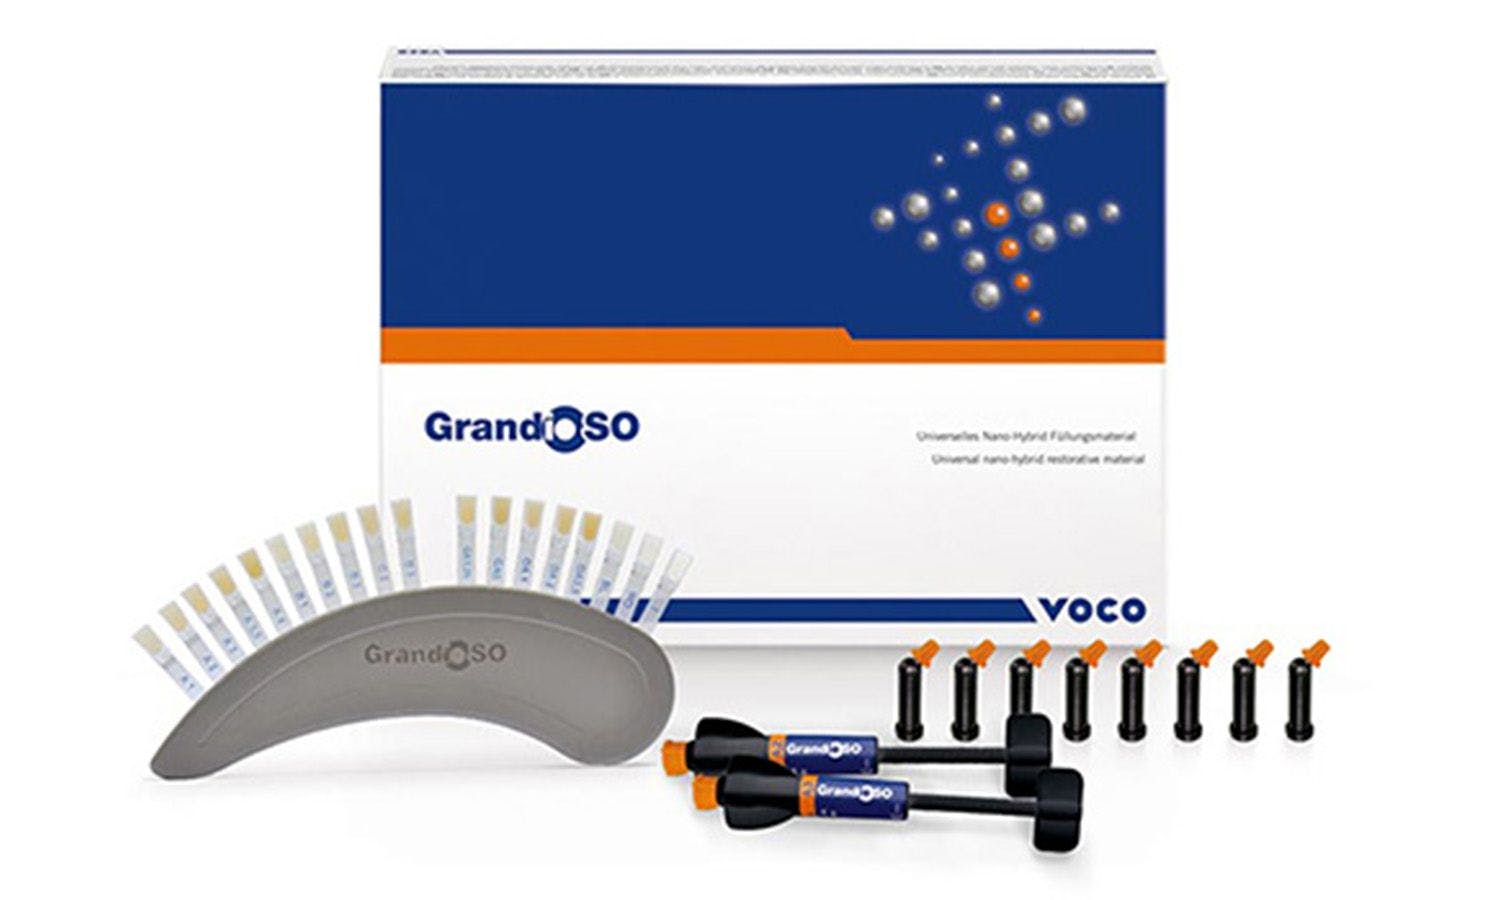 VOCO's GrandiSO Composite